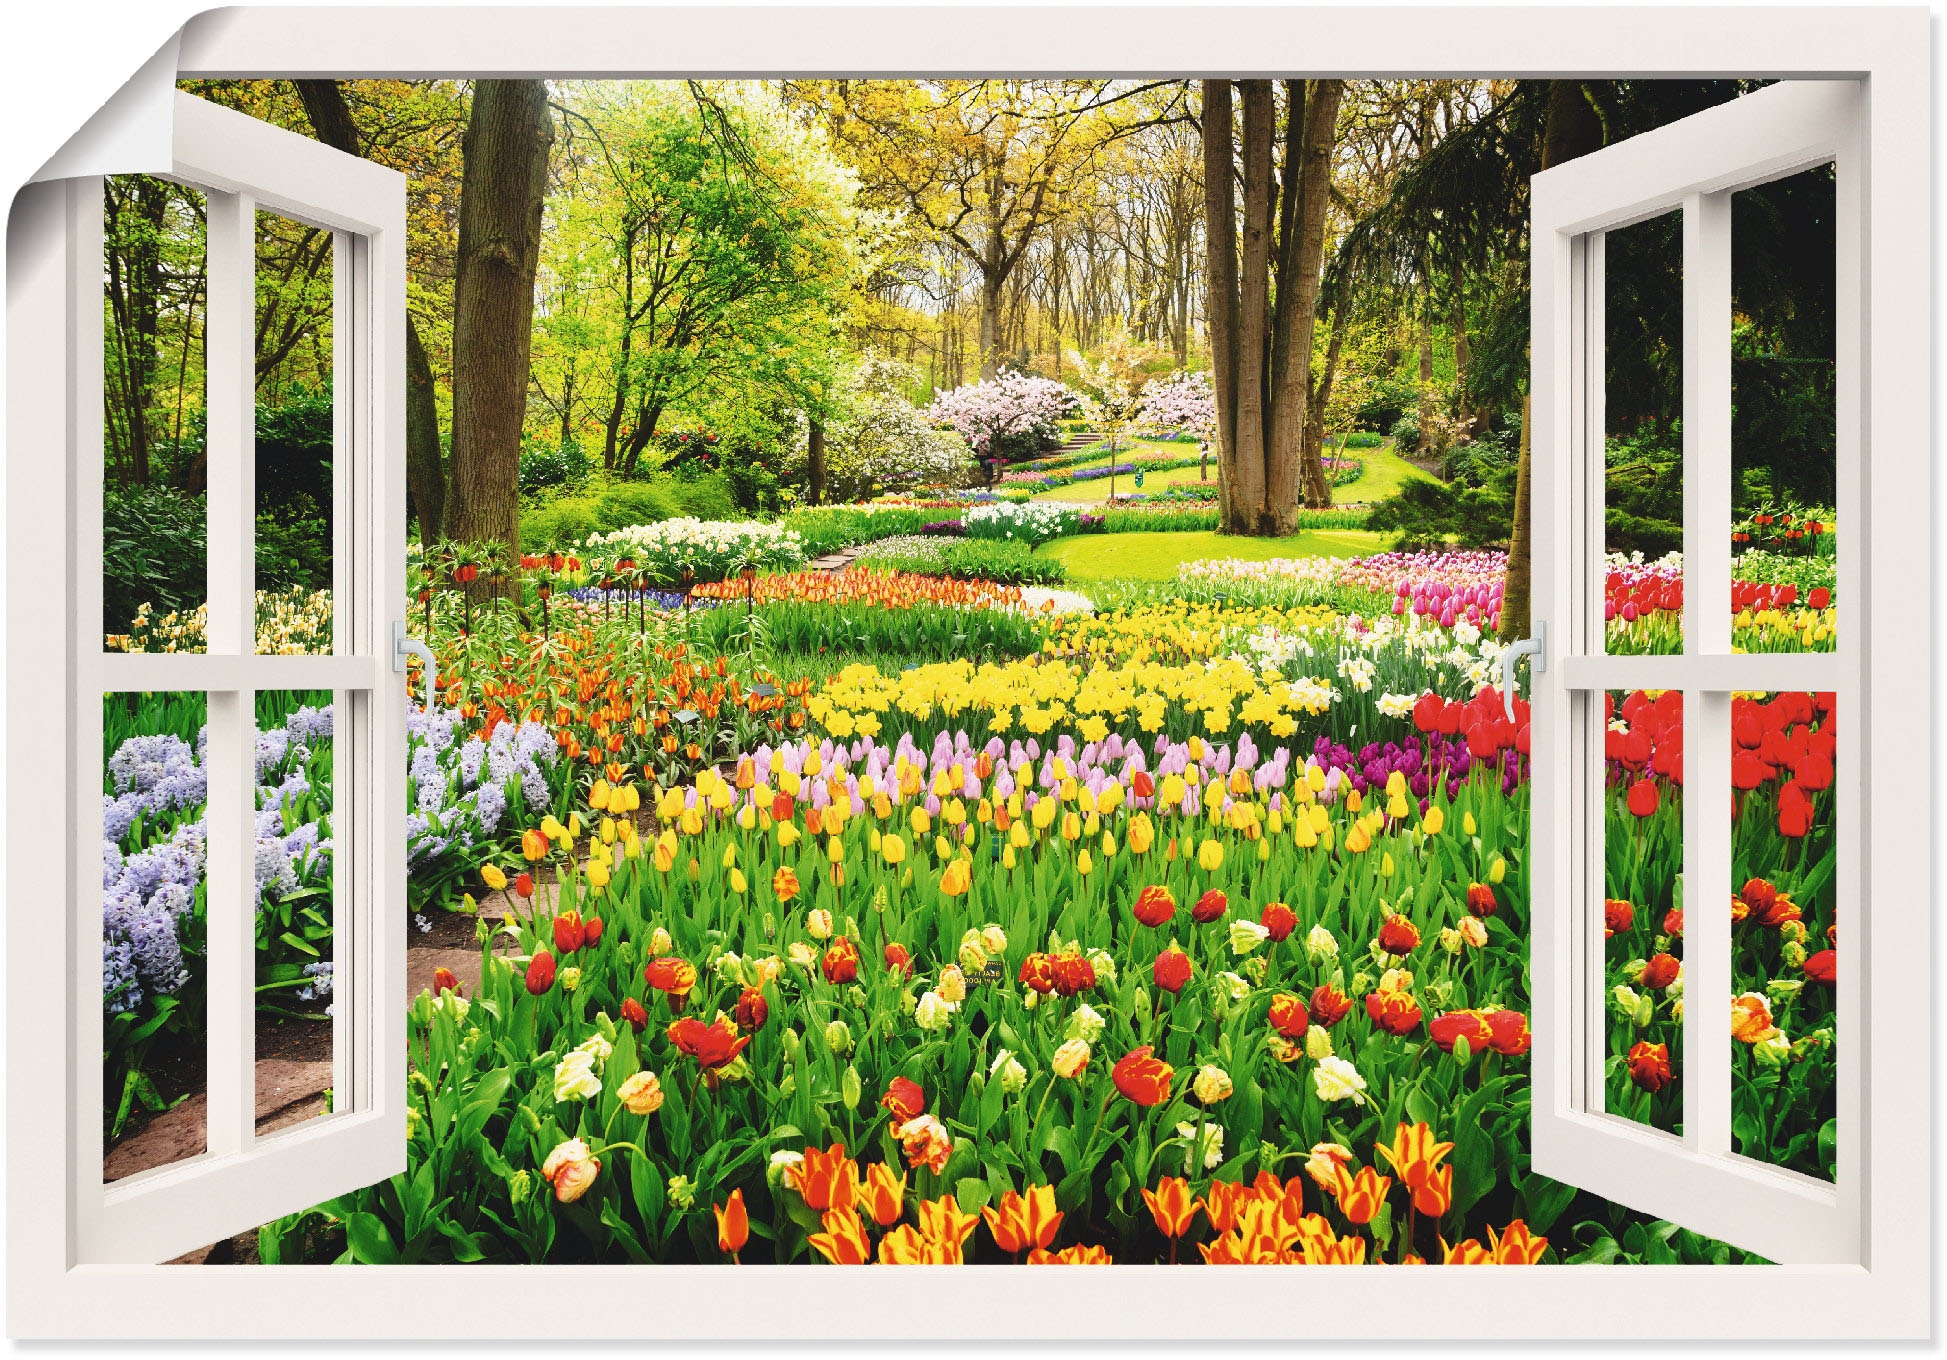 Artland Wandbild »Fensterblick Tulpen Garten Frühling«, Fensterblick, (1 St.), als Alubild, Outdoorbild, Leinwandbild, Poster, Wandaufkleber